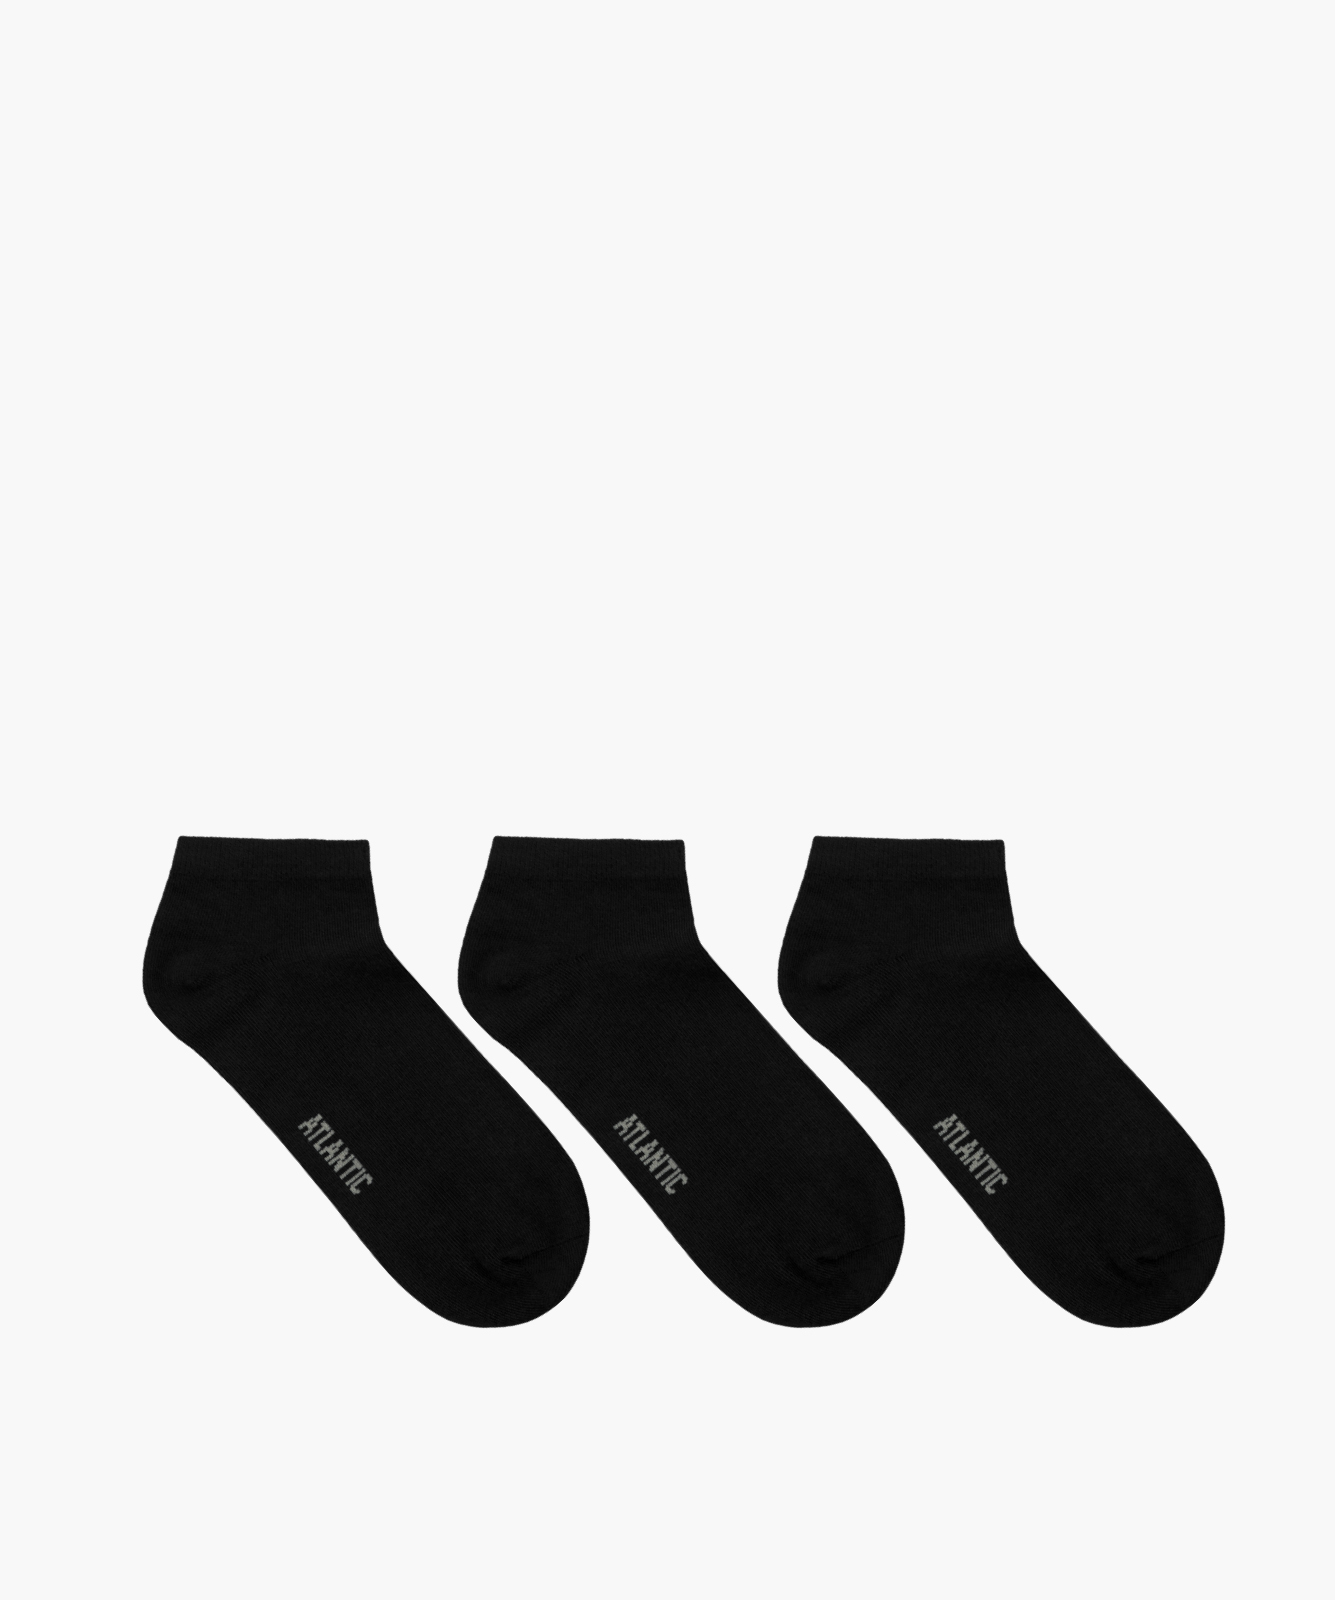 Men's socks 3Pack - black